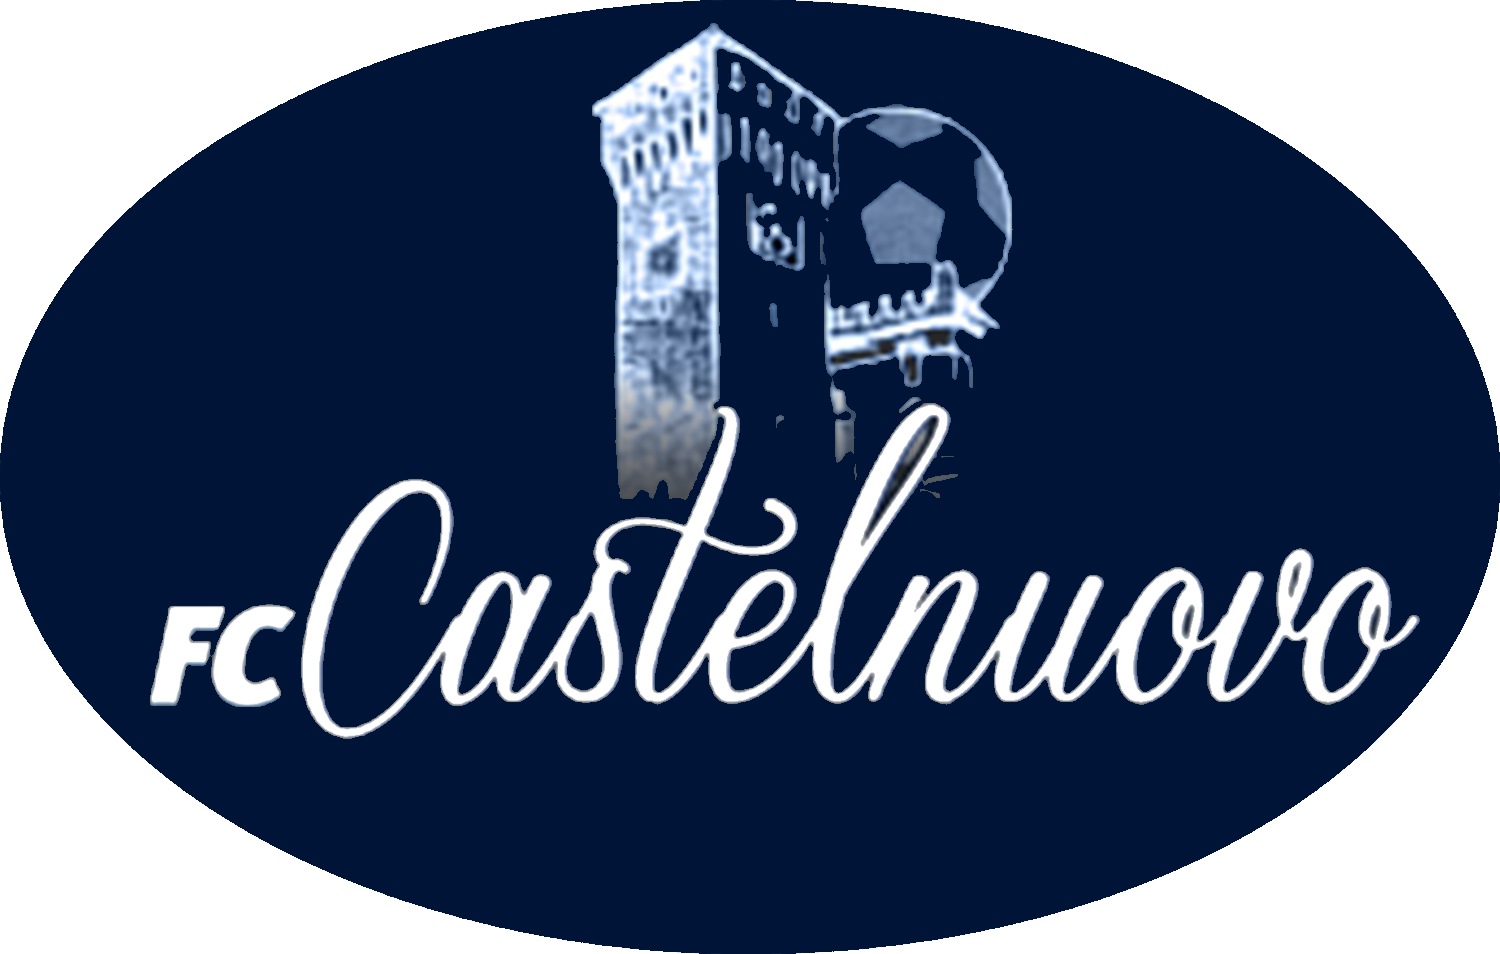 FC CASTELNUOVO v POLINAGO